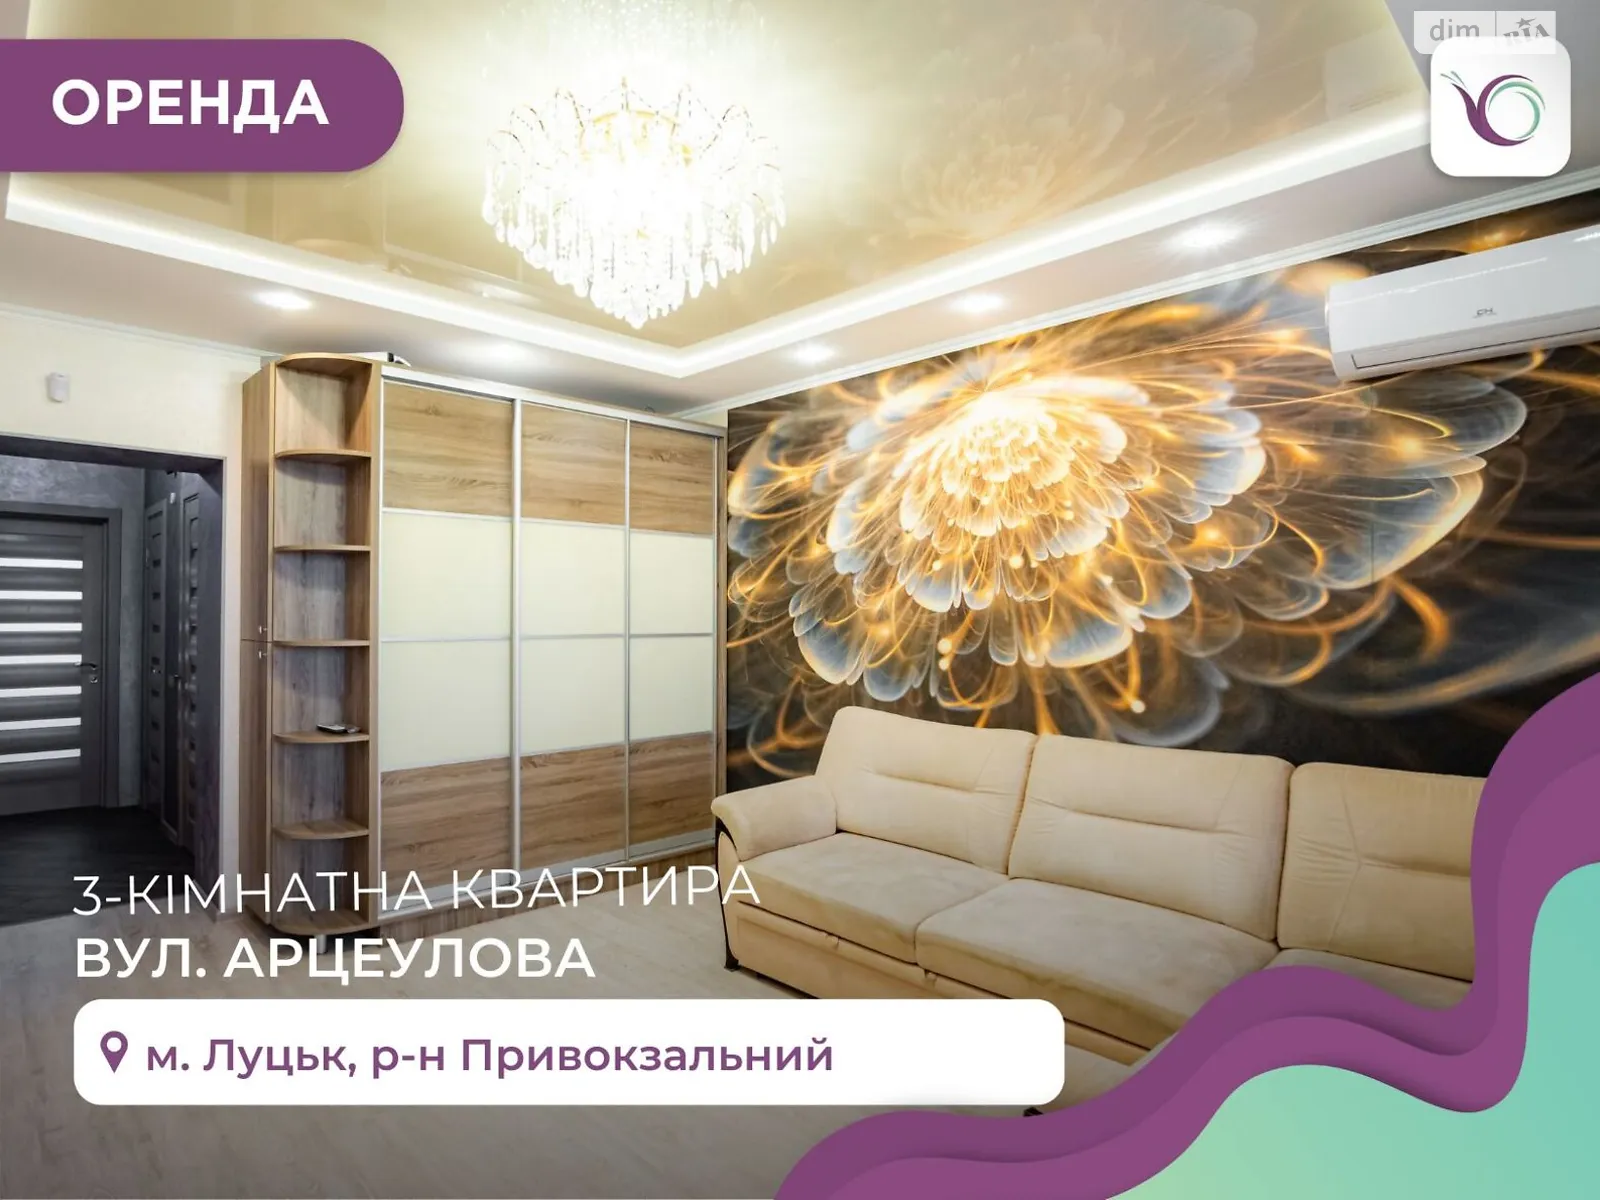 3-кімнатна квартира 80 кв. м у Луцьку, вул. Арцеулова